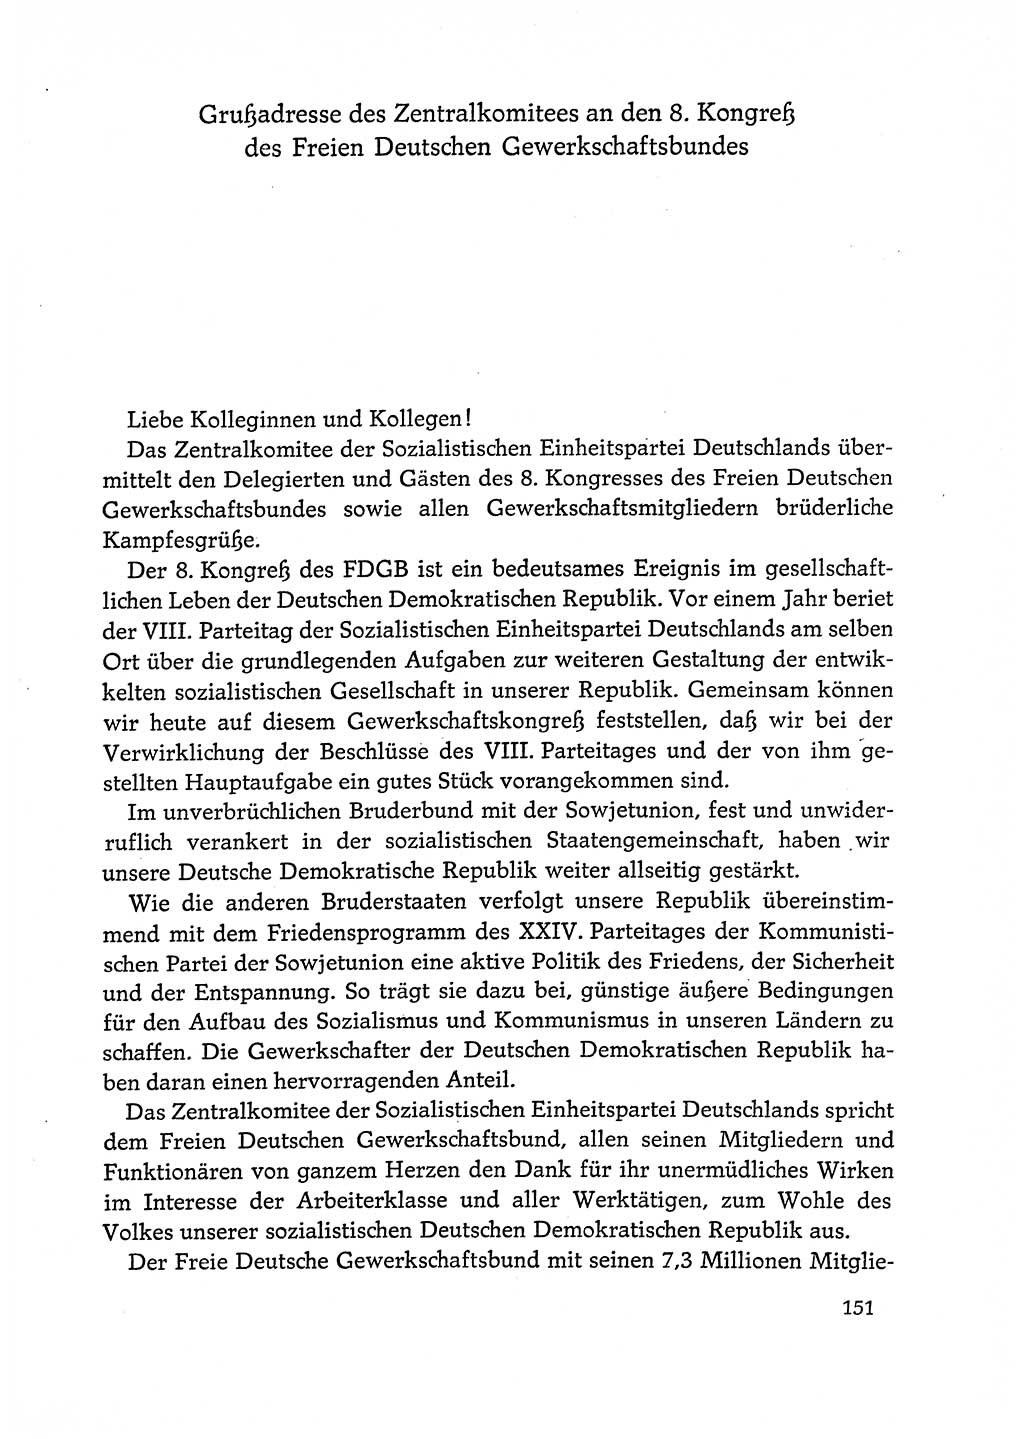 Dokumente der Sozialistischen Einheitspartei Deutschlands (SED) [Deutsche Demokratische Republik (DDR)] 1972-1973, Seite 151 (Dok. SED DDR 1972-1973, S. 151)